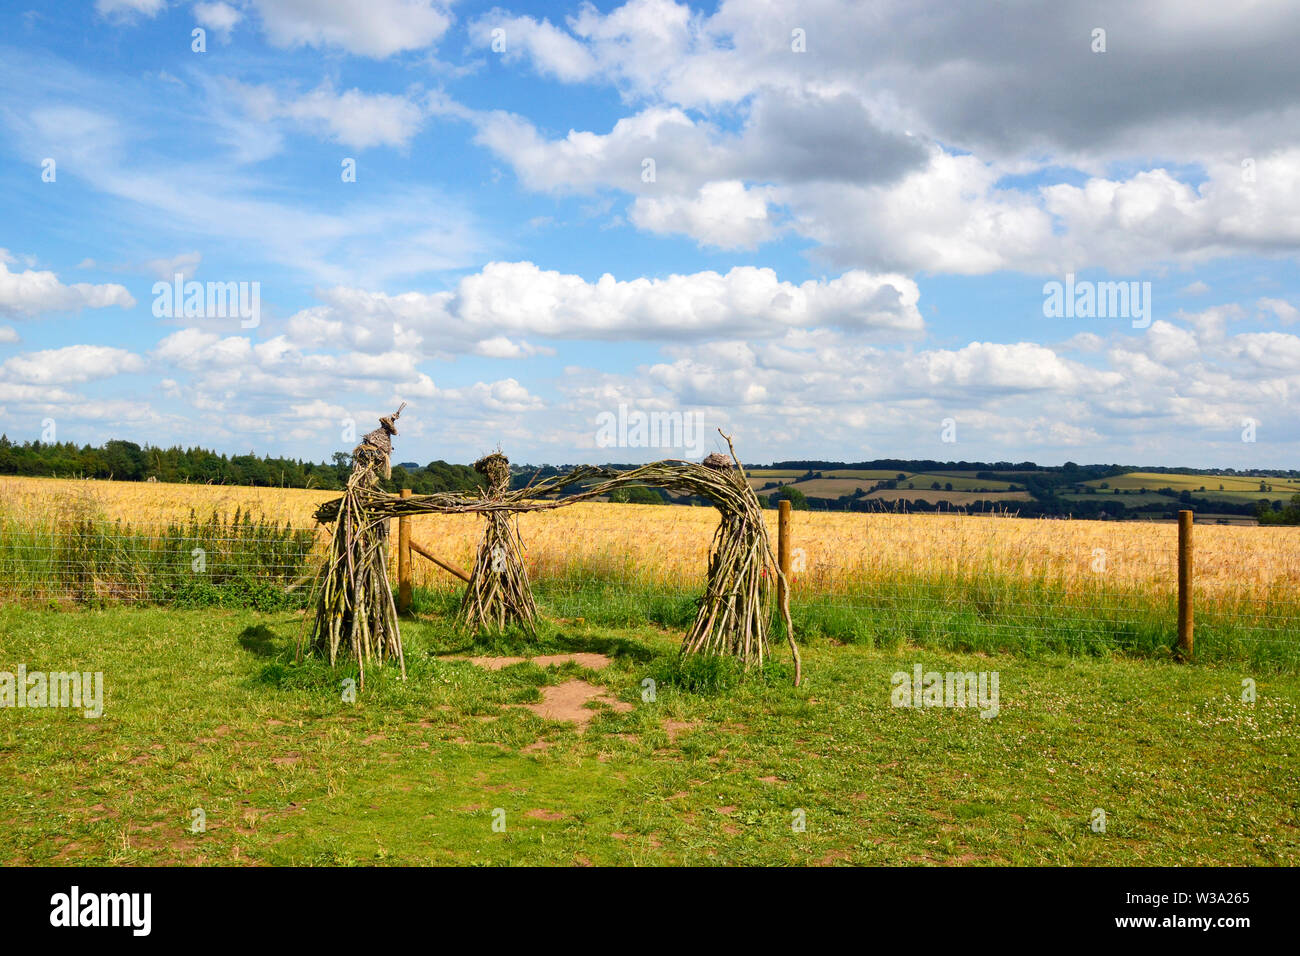 Trois Fées Sculpture, les hommes du roi, le cercle de pierres de Rollright Stones, Pierre Cour, Grande Rollright, Chipping Norton, Oxfordshire, UK Banque D'Images